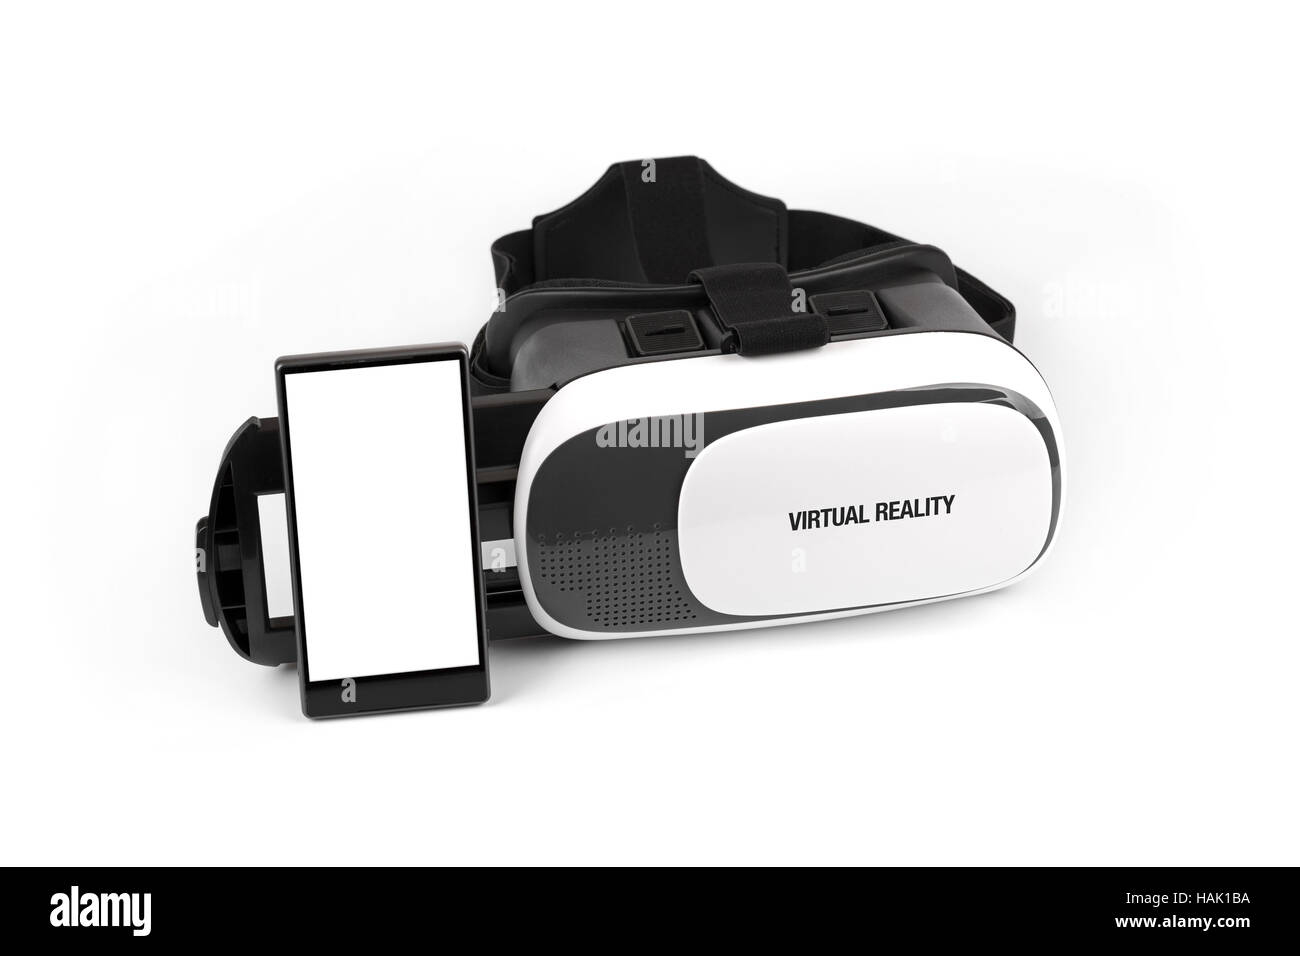 Lunettes de réalité virtuelle avec mobile phone isolated on white Banque D'Images